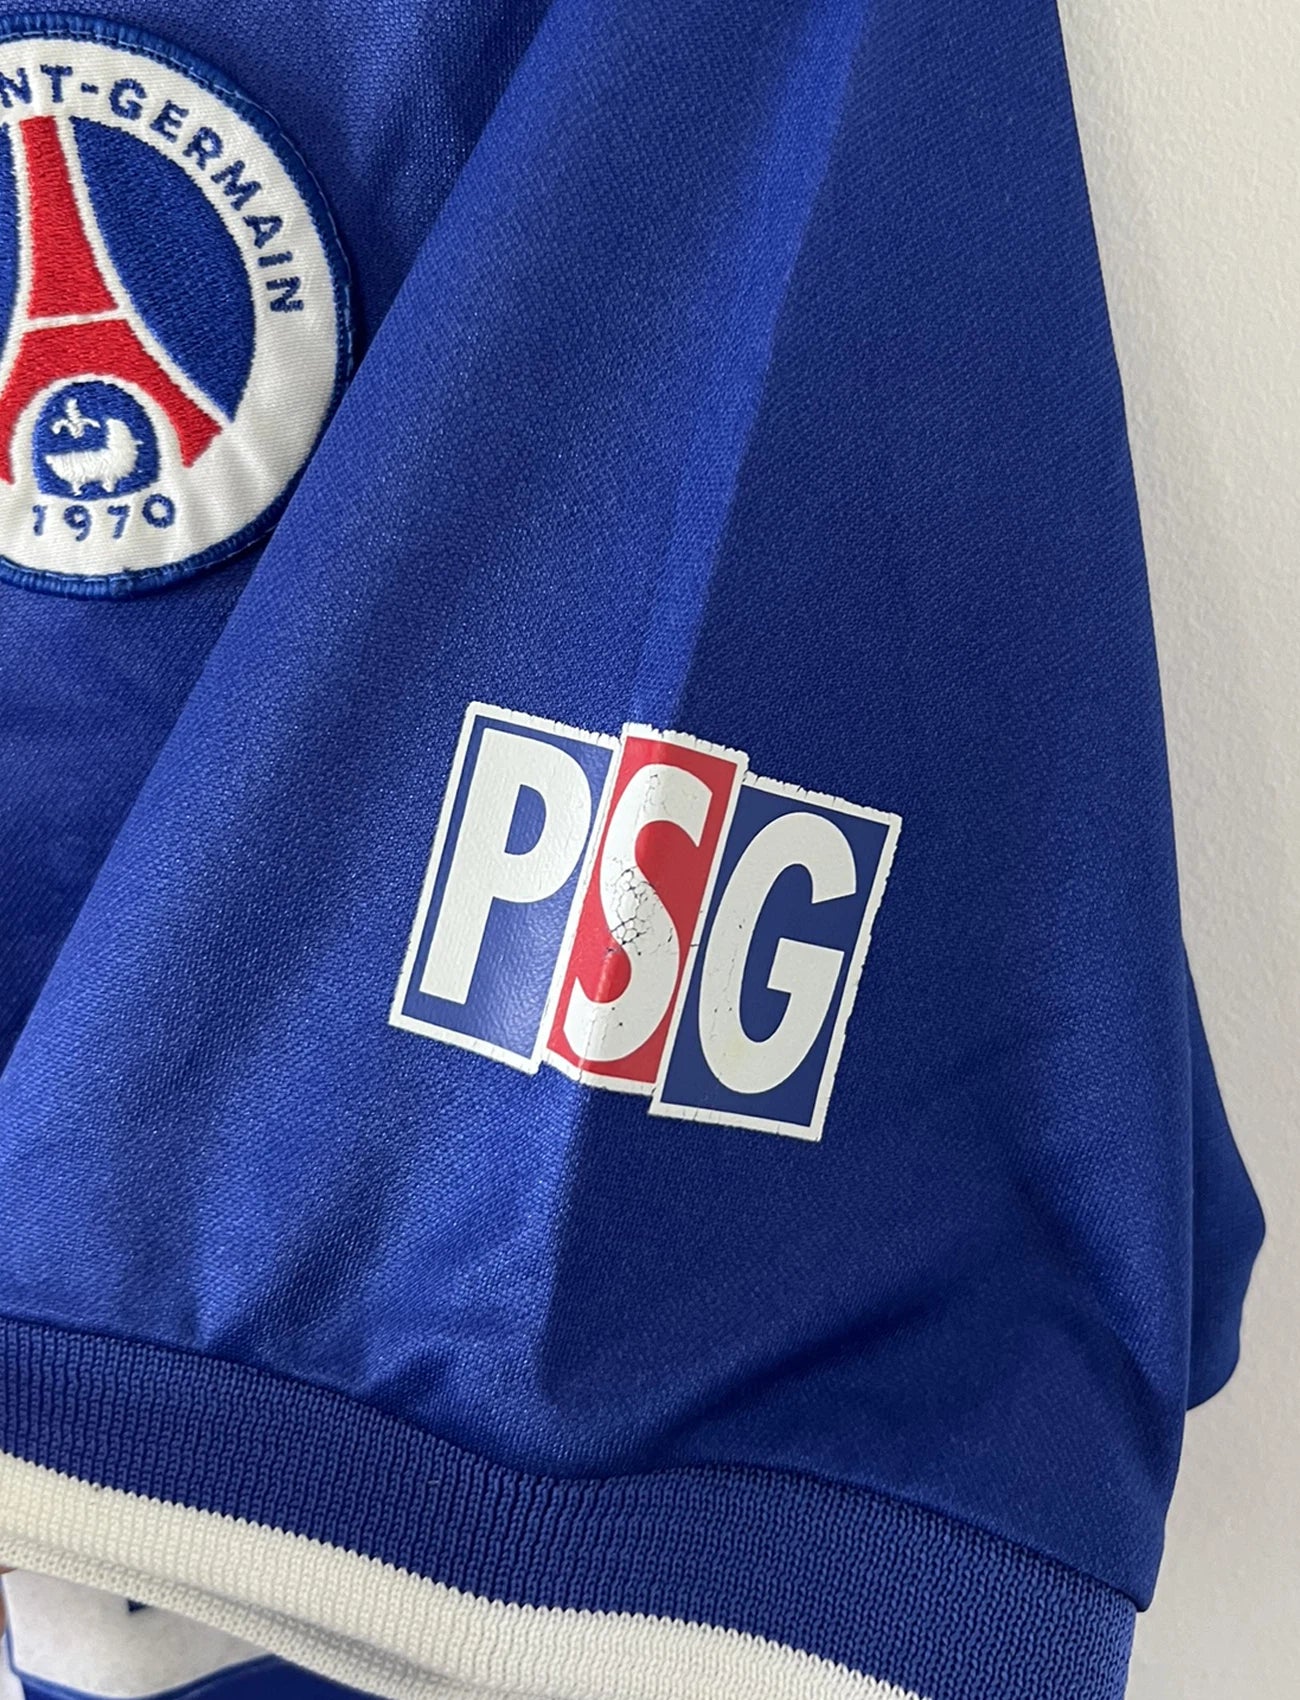 Maillot de foot vintage domicile du PSG de la saison 1999/2000. Le maillot est de couleur bleu et rouge. On peut retrouver l'équipementier nike et le sponsor Opel. Le maillot est floqué du numéro 11 Laurent Robert. Il s''agit d'un maillot authentique d'époque comportant l'étiquette avec les numéros F9 CRM